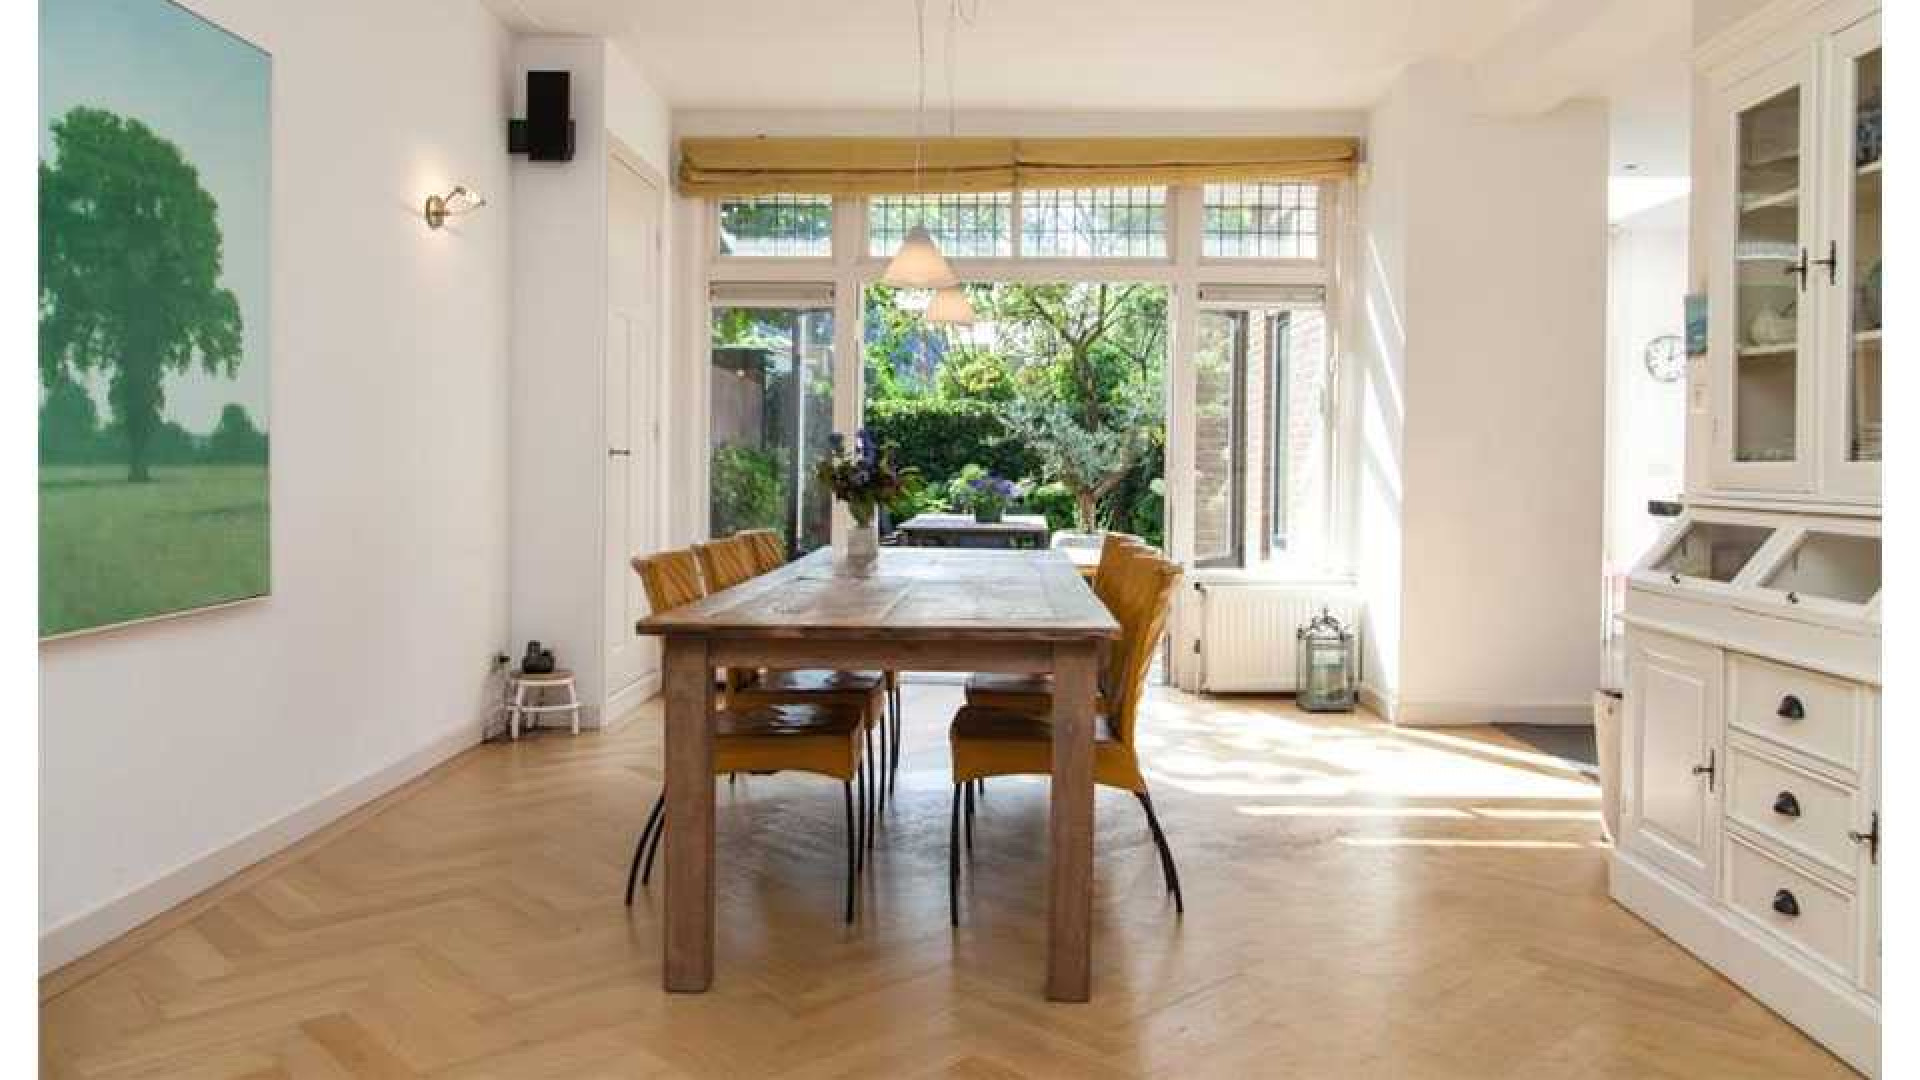 Alberto Stegeman koopt uit eigen zak voor bijna 1 miljoen villa in Heemstede. Zie foto's 5